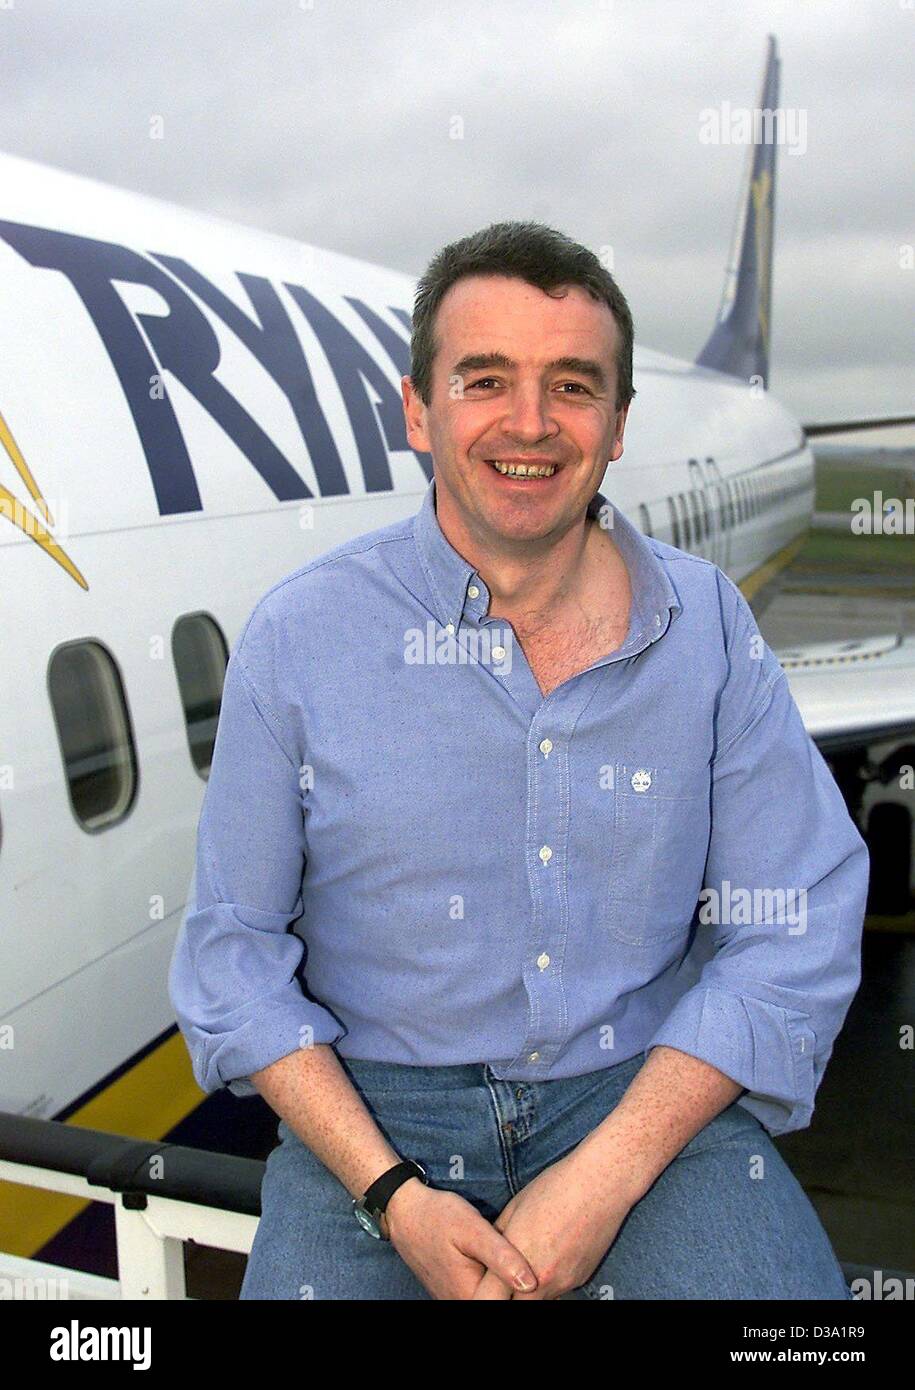 (Dpa) - Michael O'Leary, CEO de la compañía aérea irlandesa Ryanair, posa delante de un Boeing 737-800 en el aeropuerto de Hahn, el 12 de febrero de 2002. La compañía irlandesa está ofreciendo vuelos baratos a destinos en Europa. Foto de stock